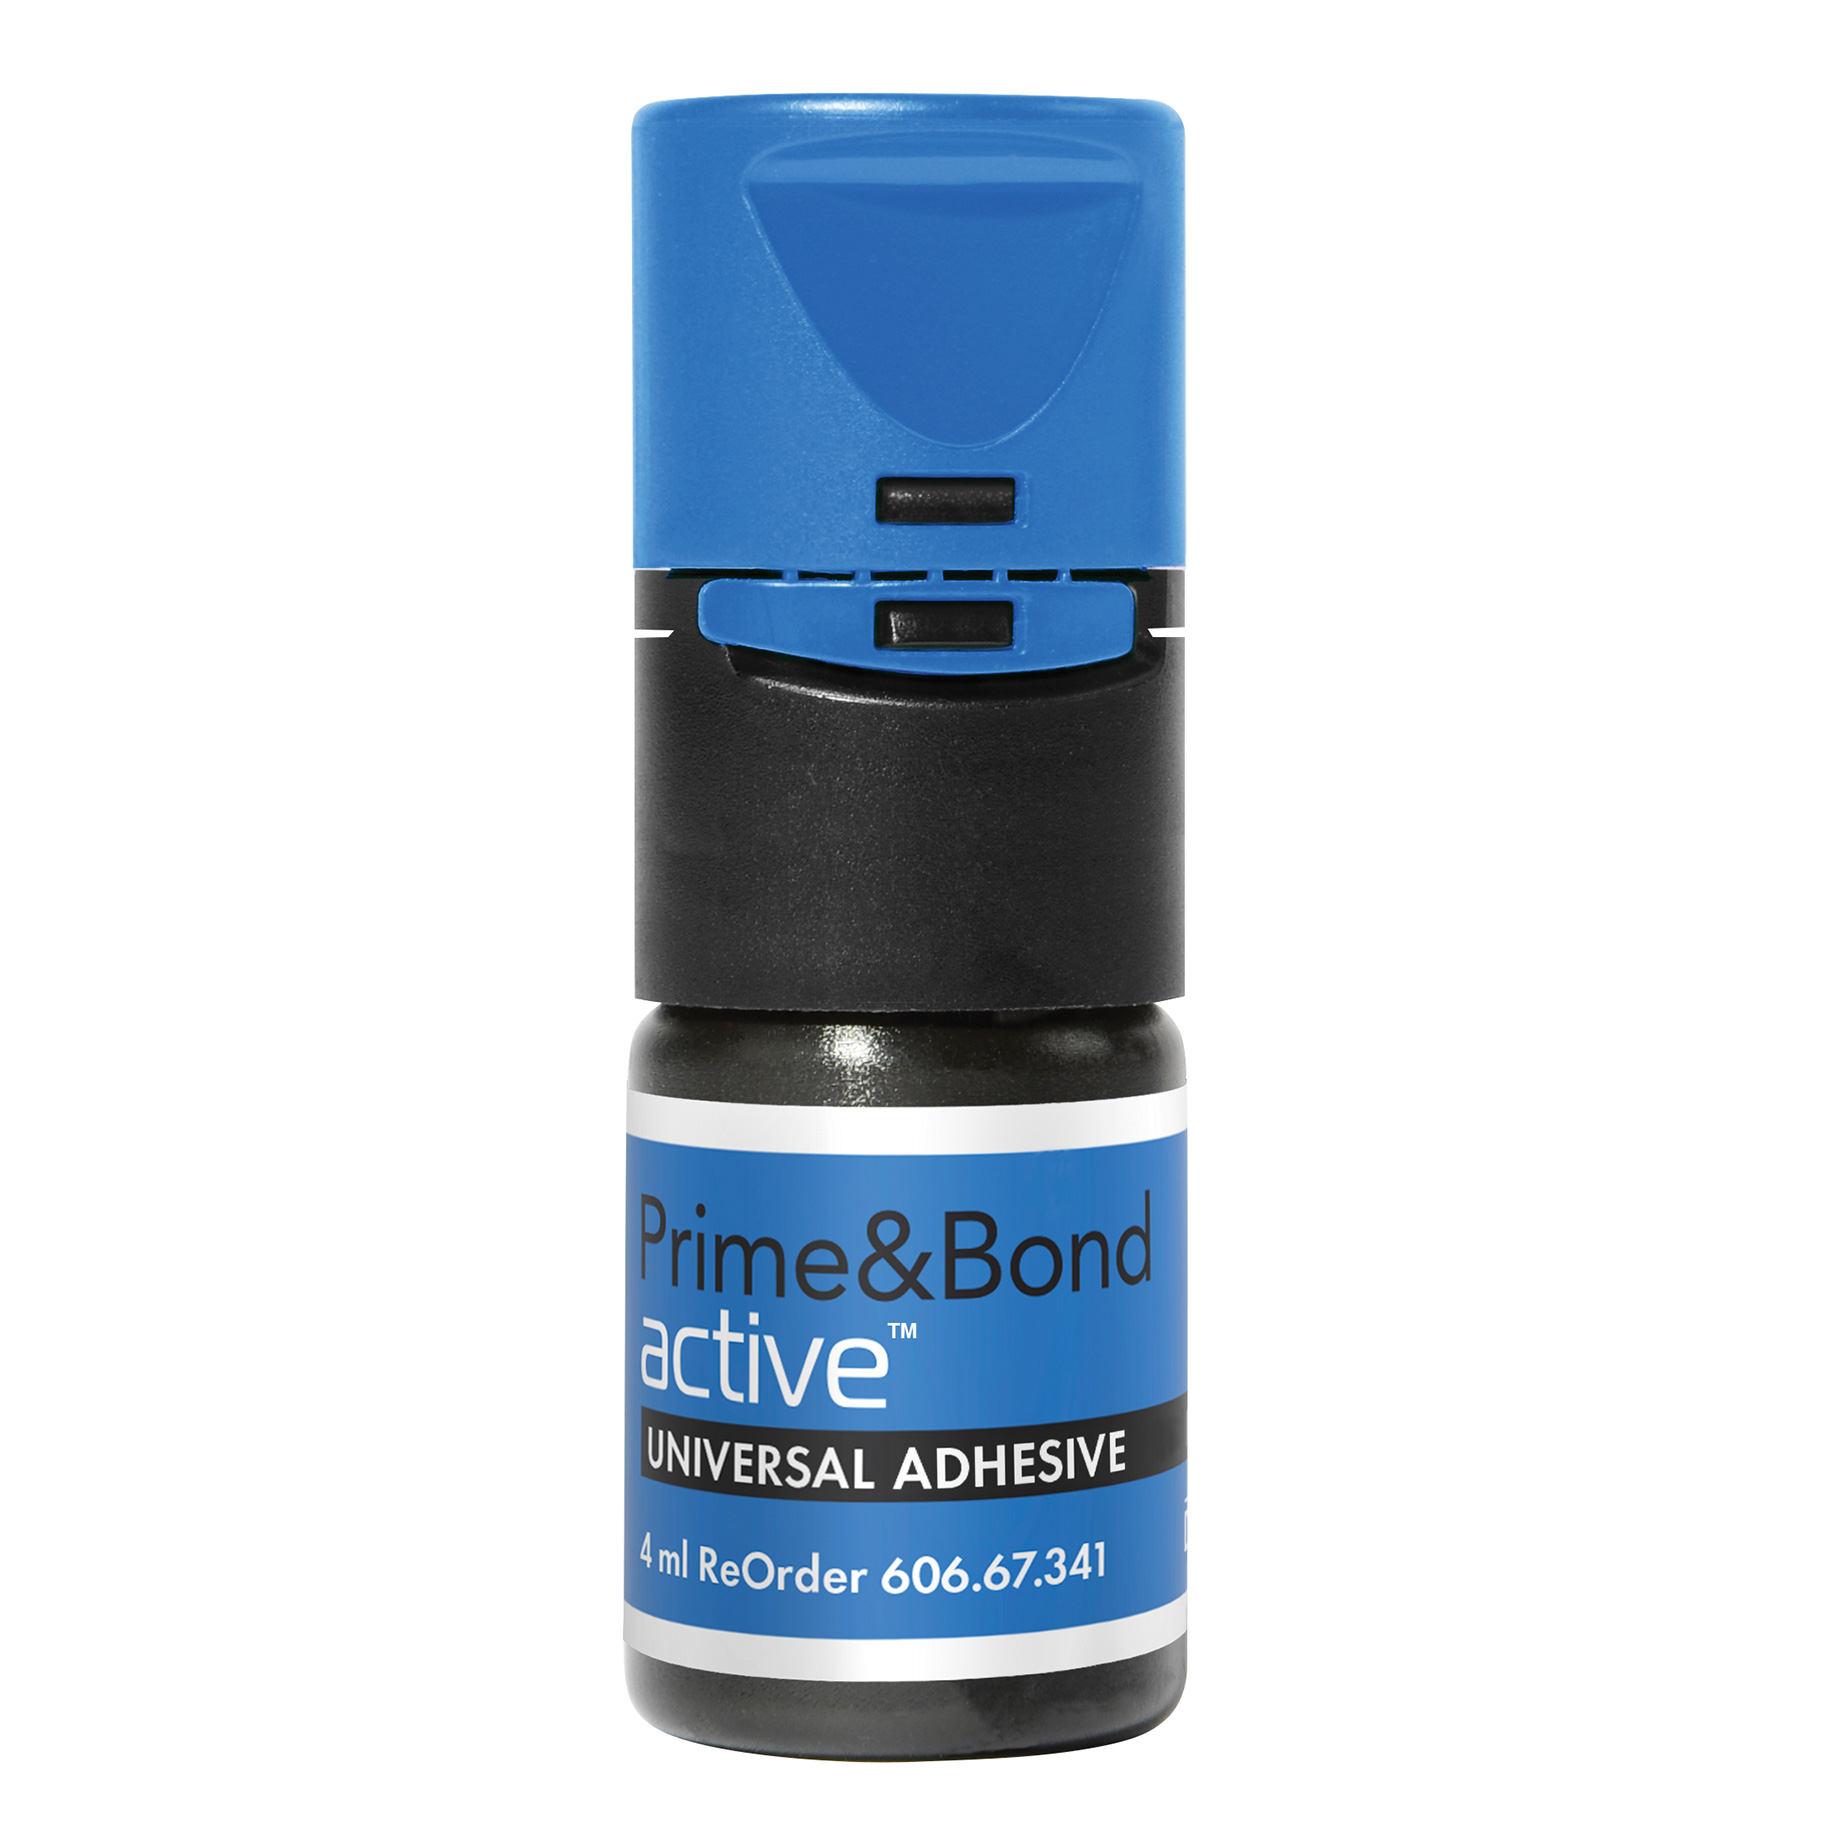 Prime&Bond active Standard Refill - 4ml Bottle 